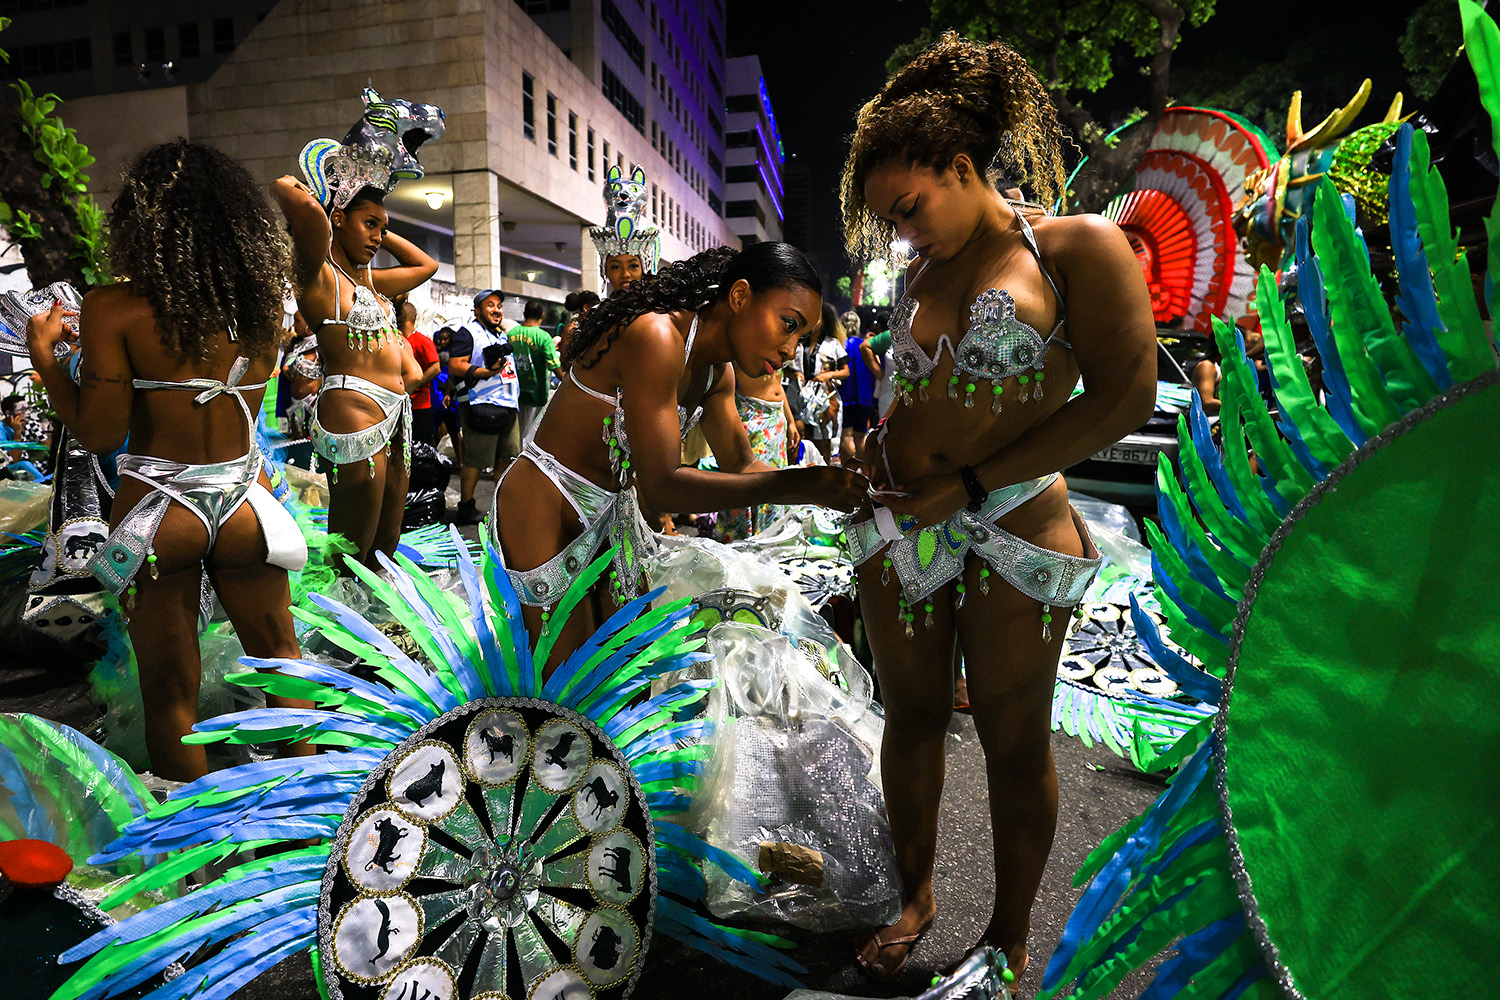 Tíz fotó bizonyítja, hogy a riói karneválnál nincs színesebb esemény a világon